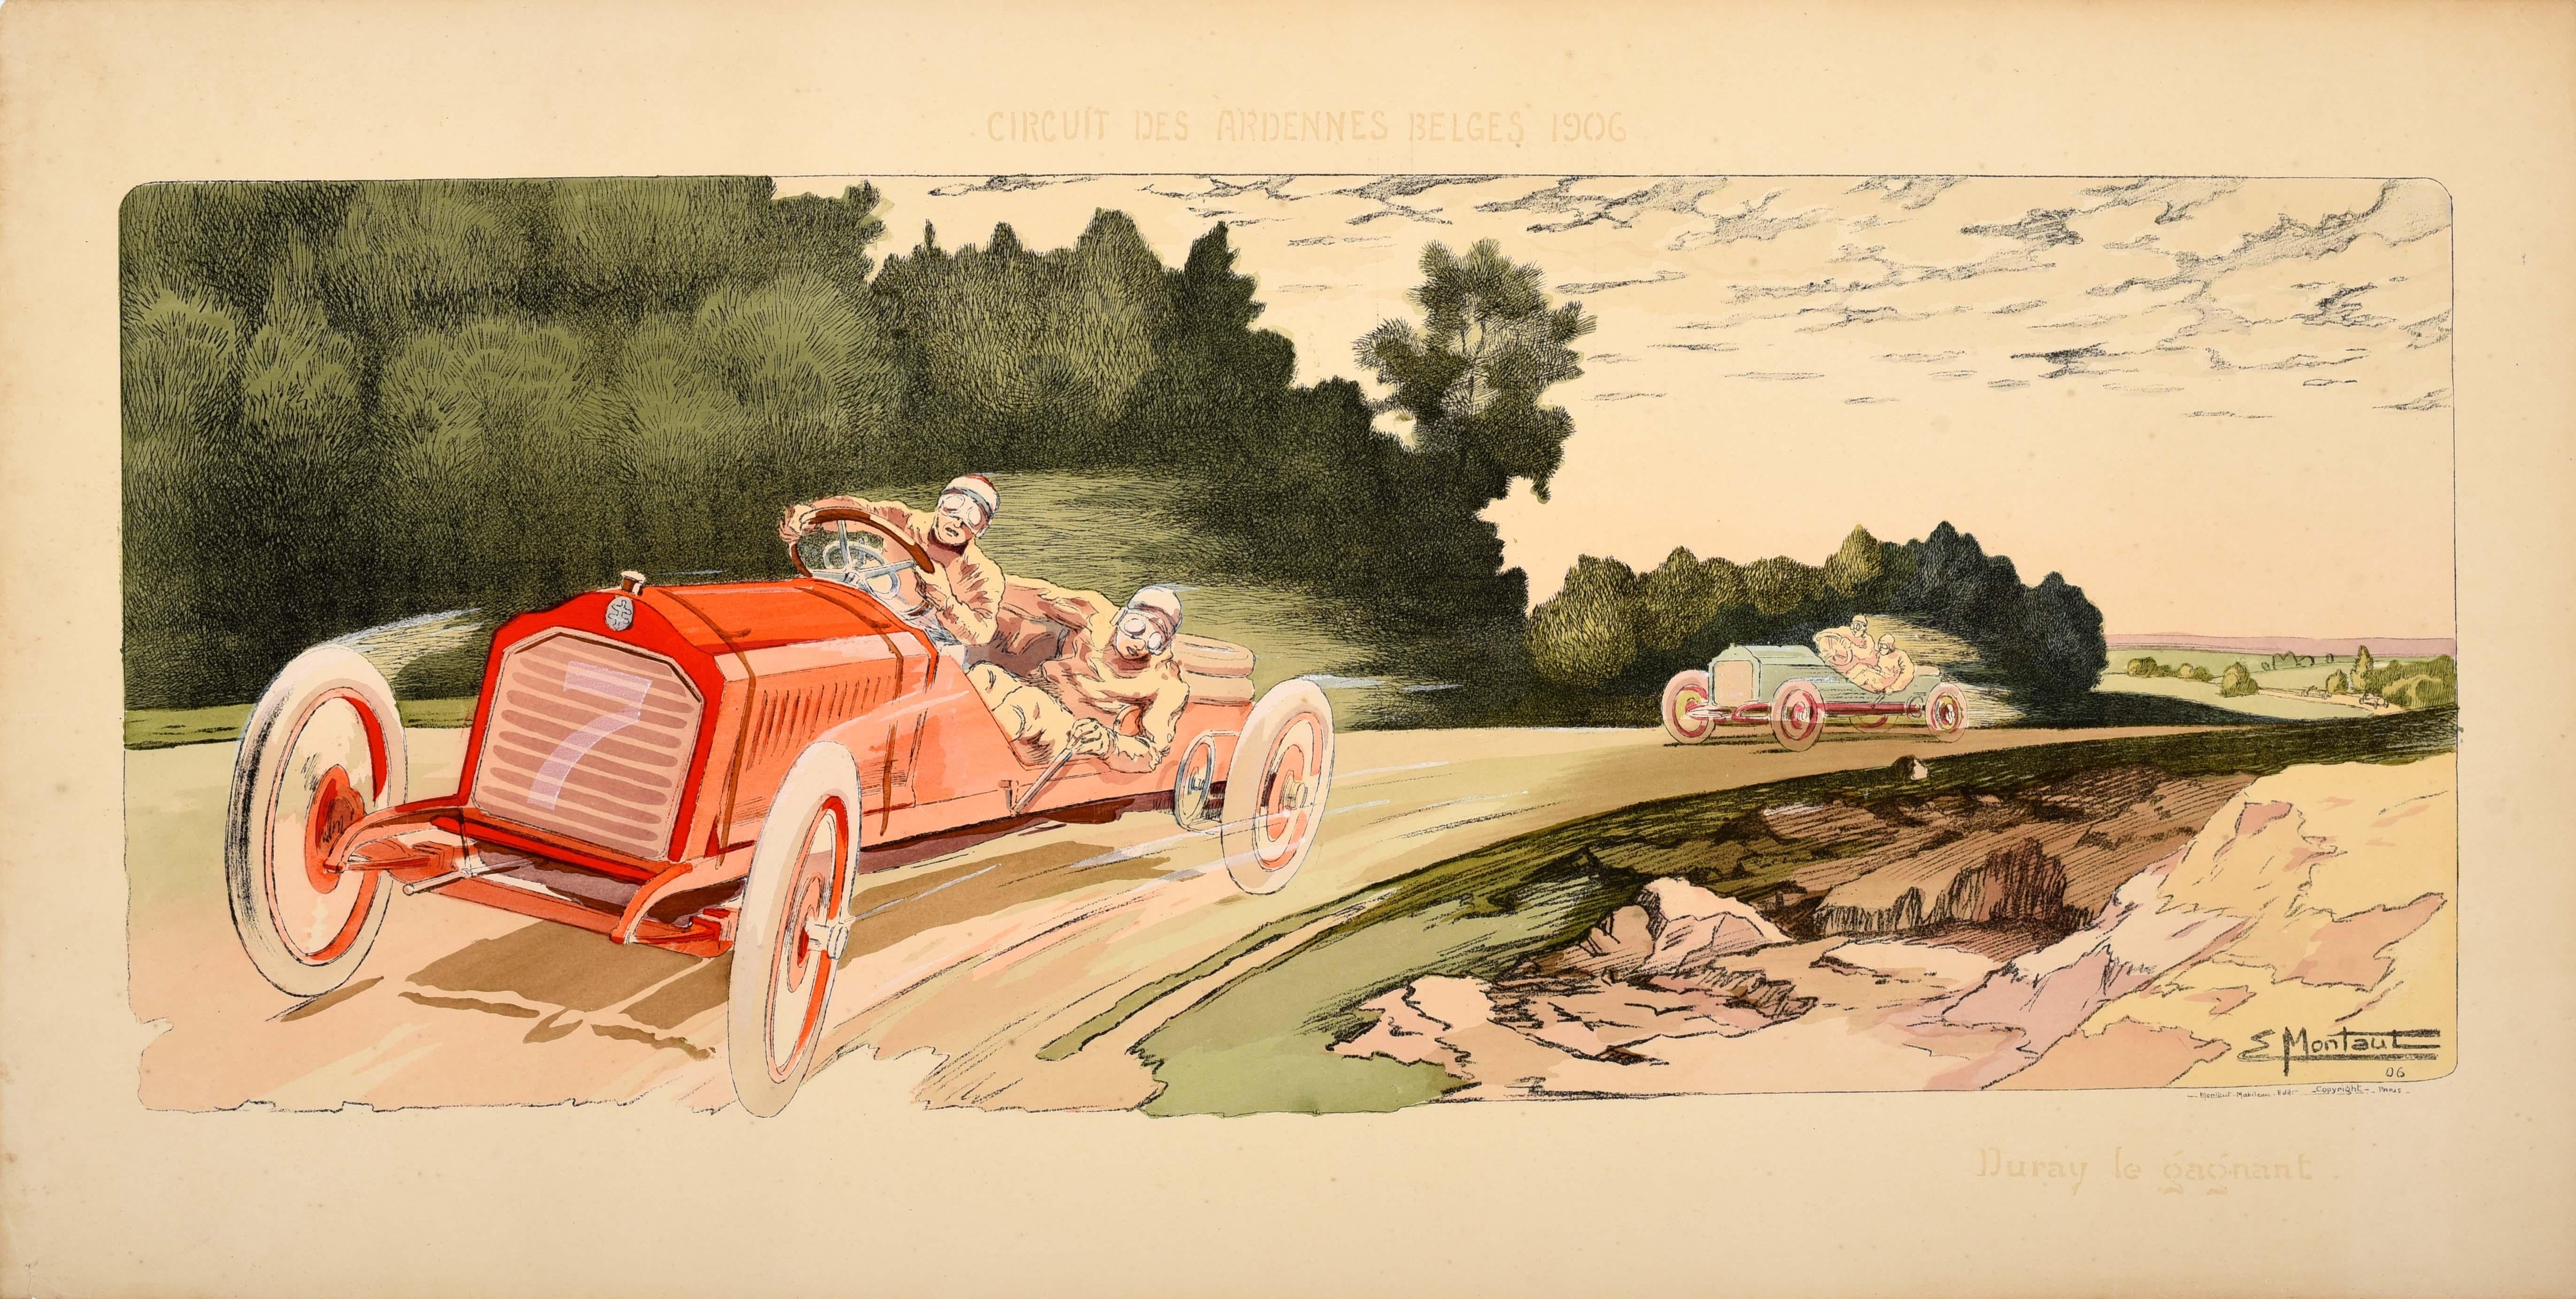 Print Ernest Montaut - Affiche Motorsport originale du Circuit des Ardennes Belge 1906 Arthur Duray